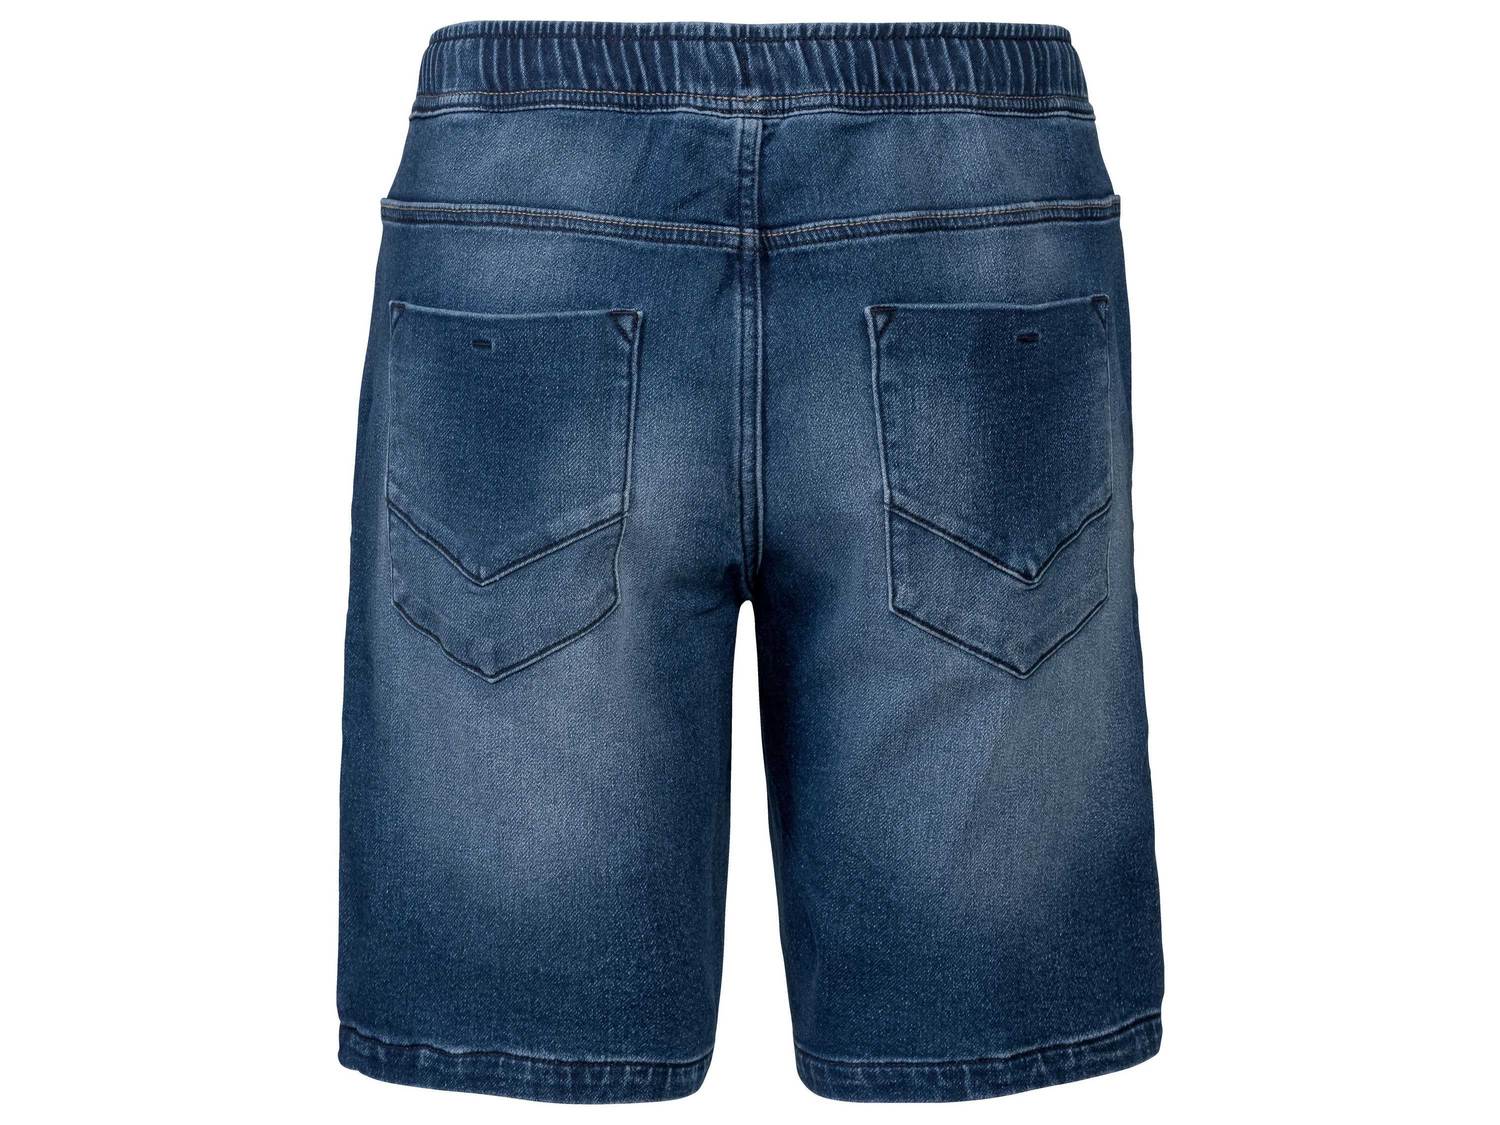 Bermudy jeansowe Livergy, cena 34,99 PLN 
- rozmiary: 48-58
- Oeko-Tex Standard ...